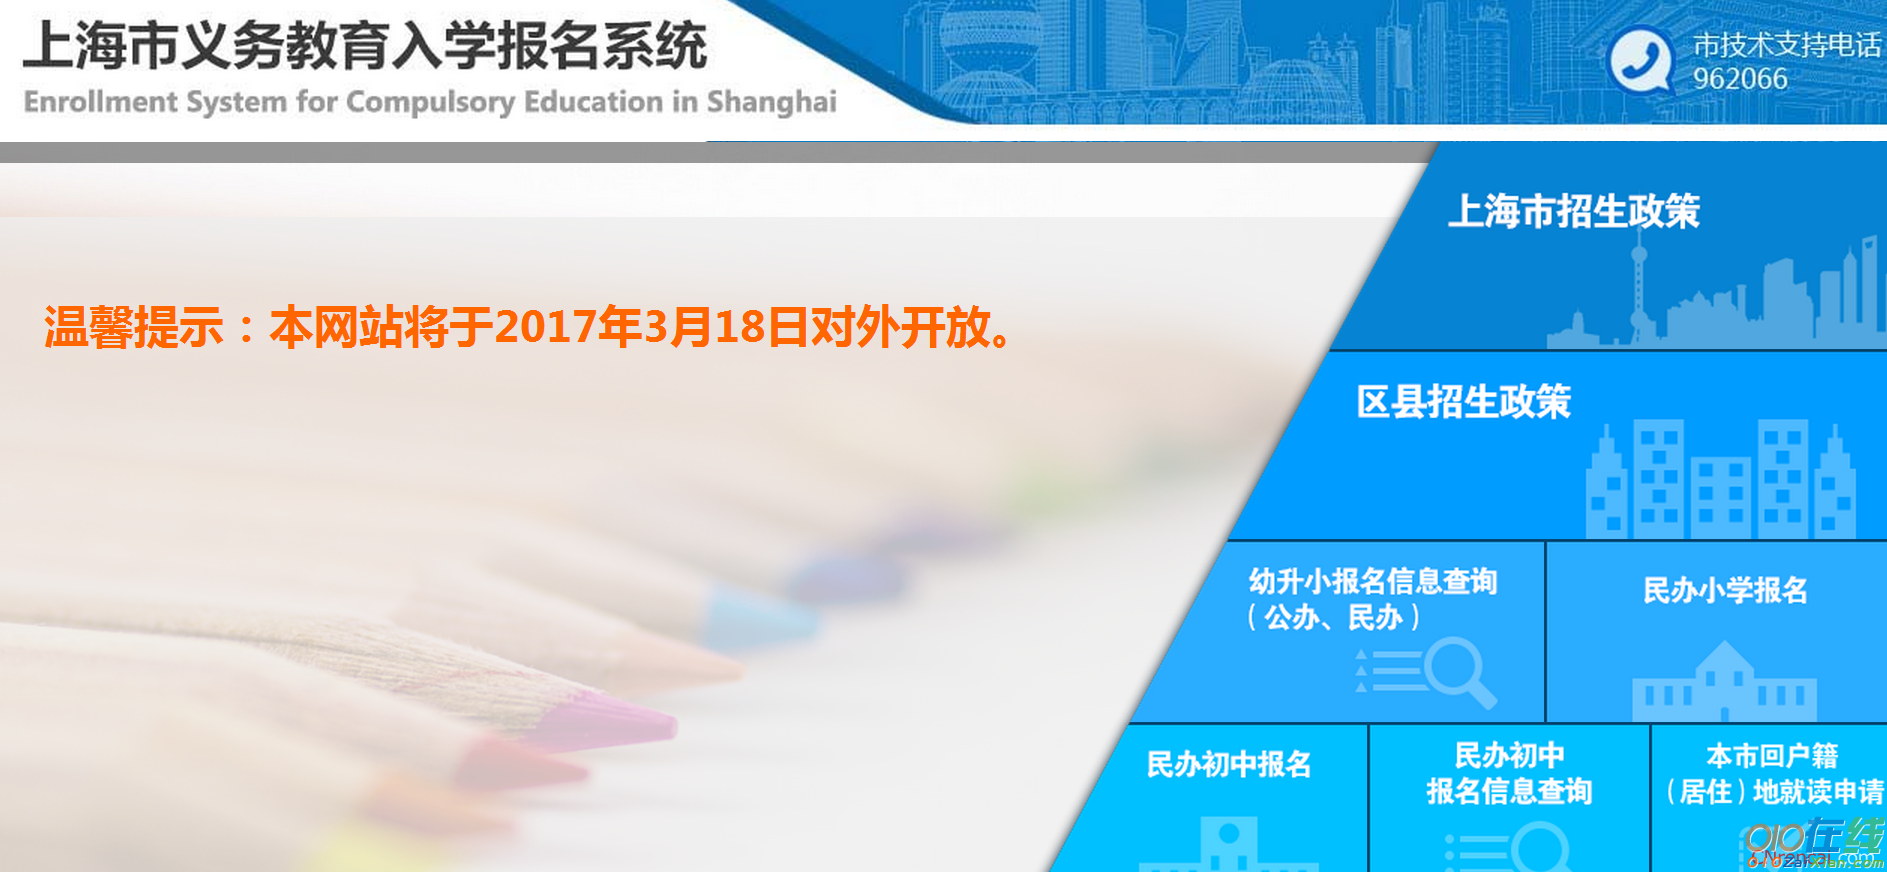 上海市义务教育入学报名系统登录页面